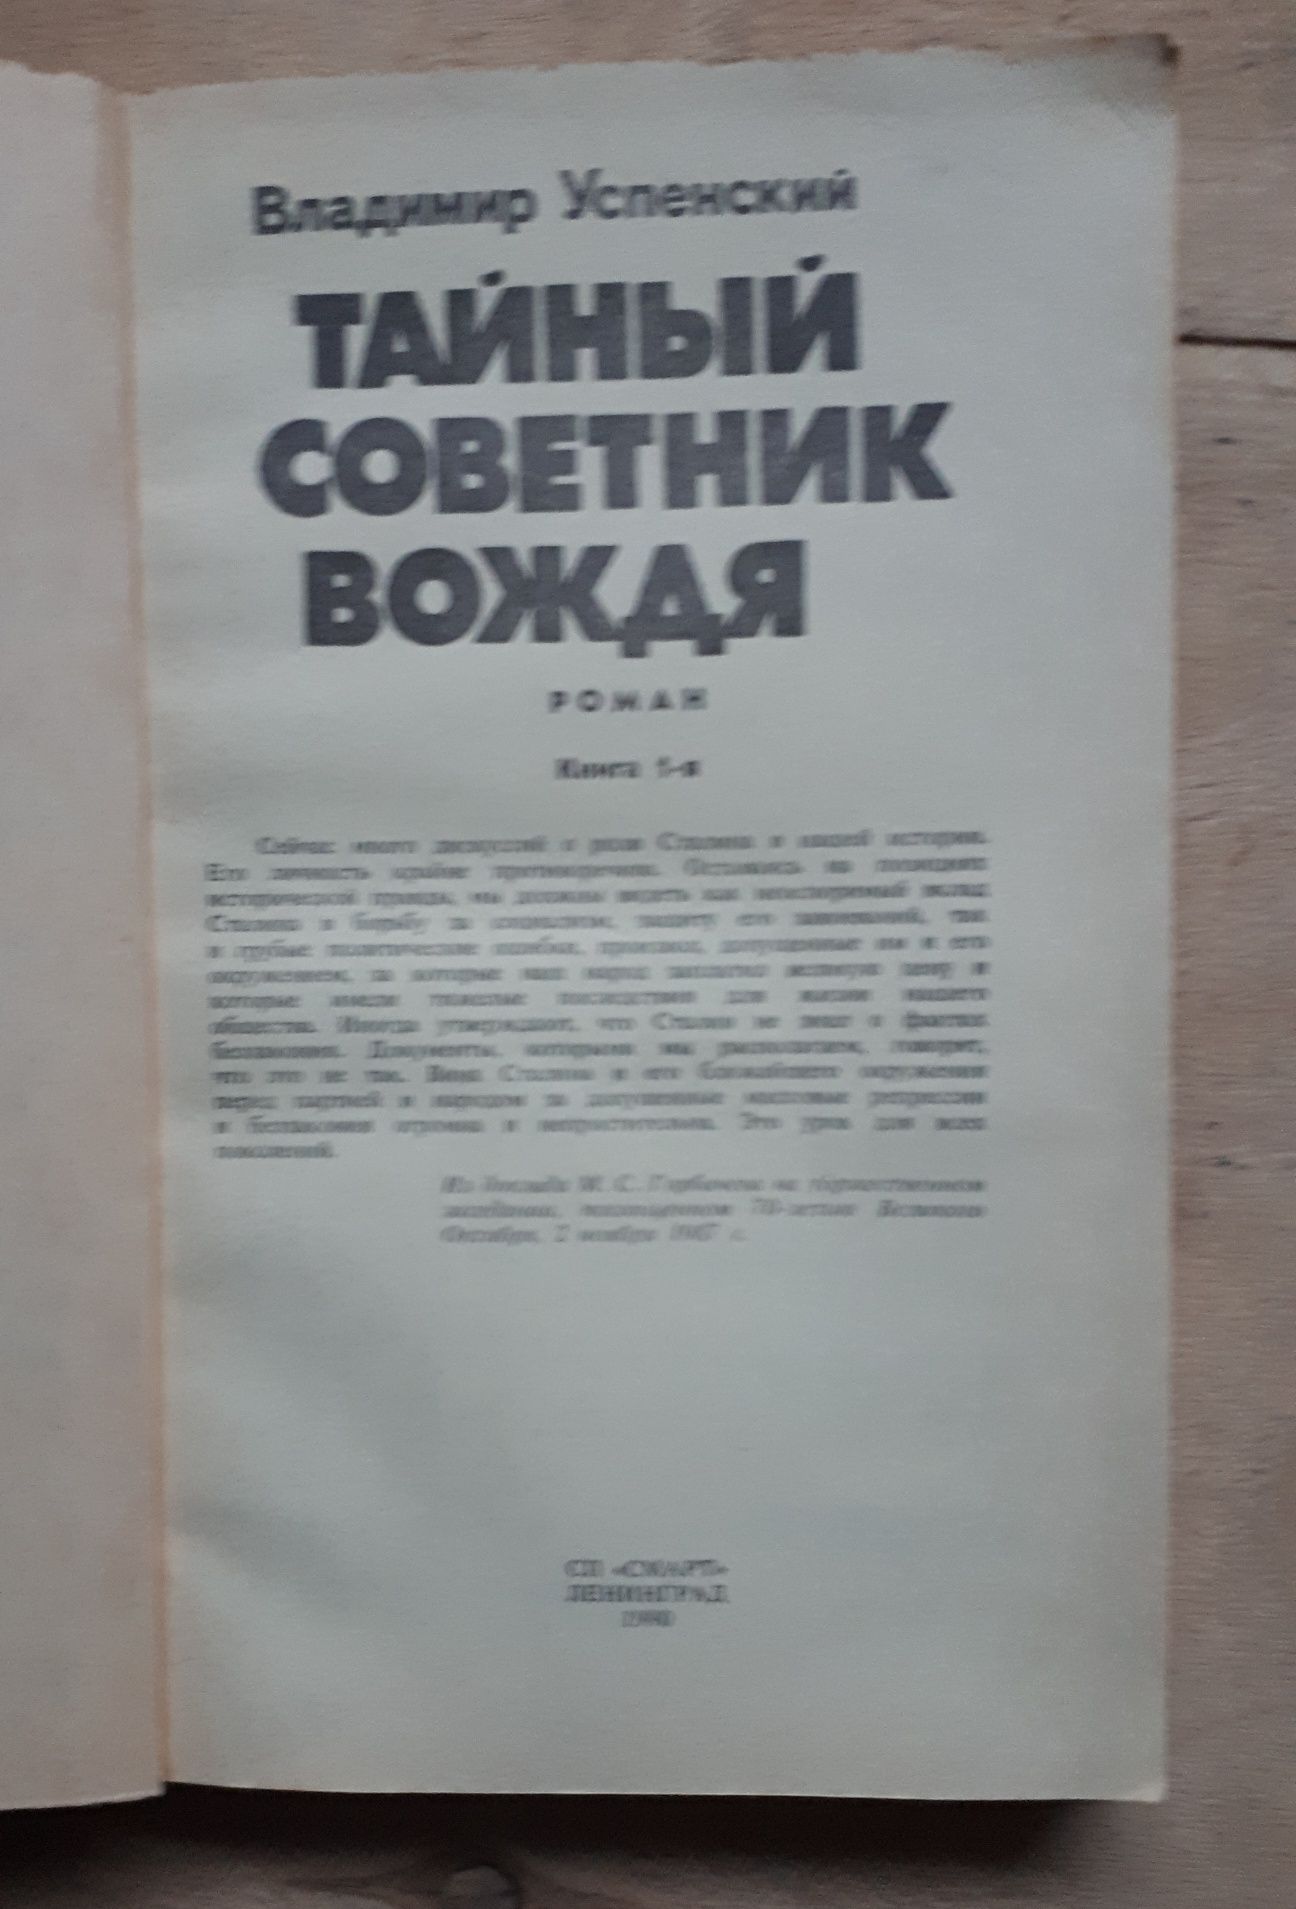 Военные Советские книги и "Герои Советского Союза-Казахстанцы"